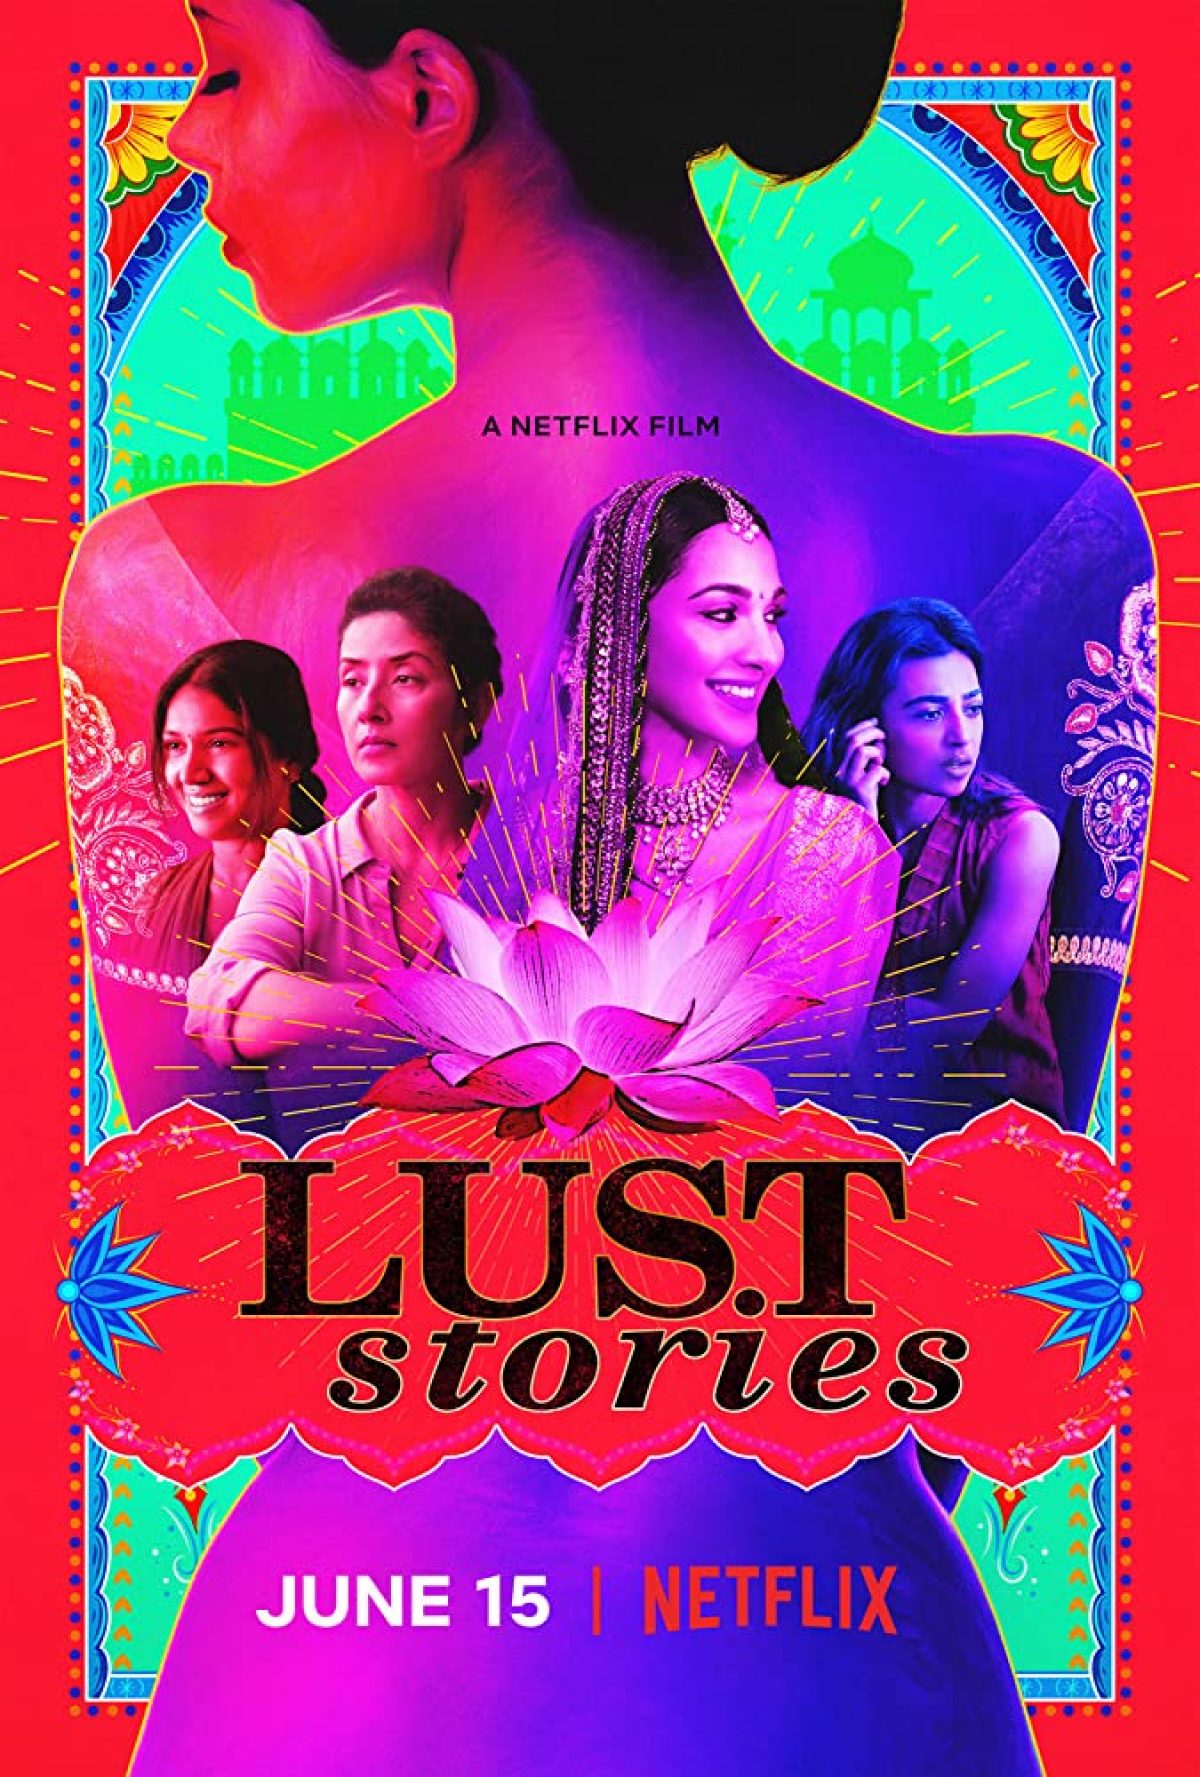 ดูหนังออนไลน์ Lust Stories – Netflix 2018 เรื่องรัก เรื่องใคร่ เว็บดูหนังชนโรง